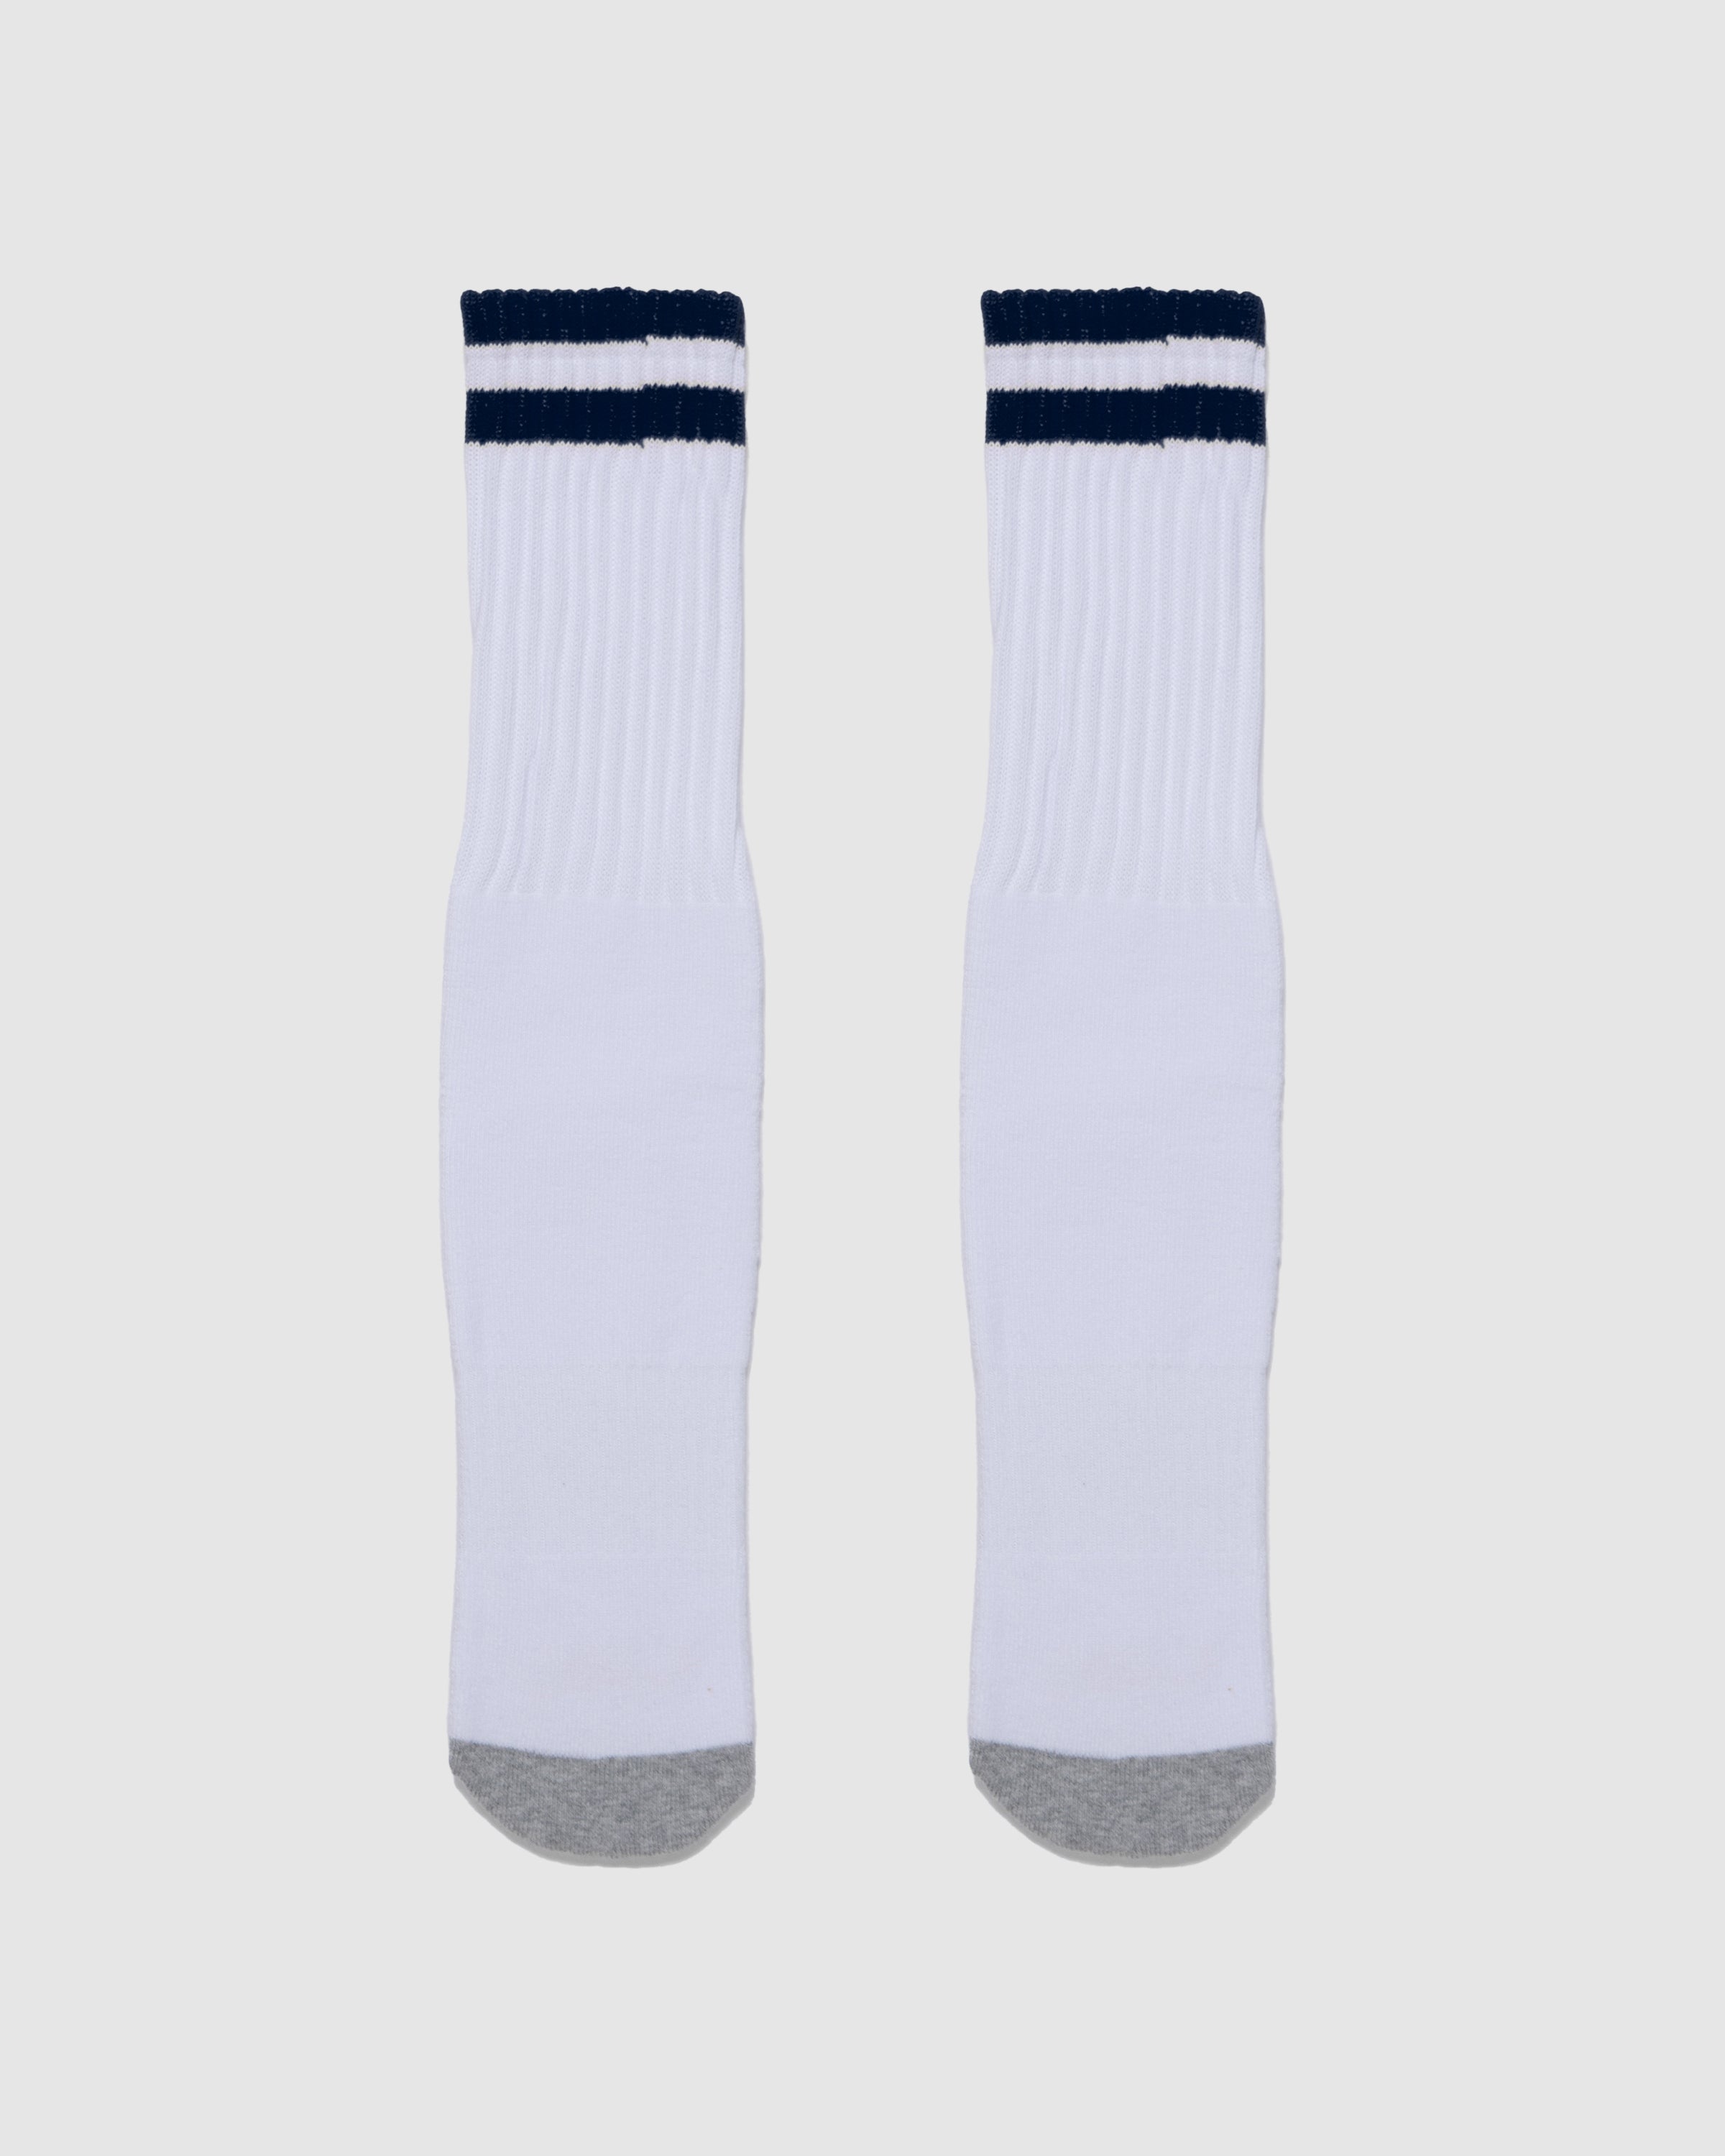 Daily Socks - Strip Navy